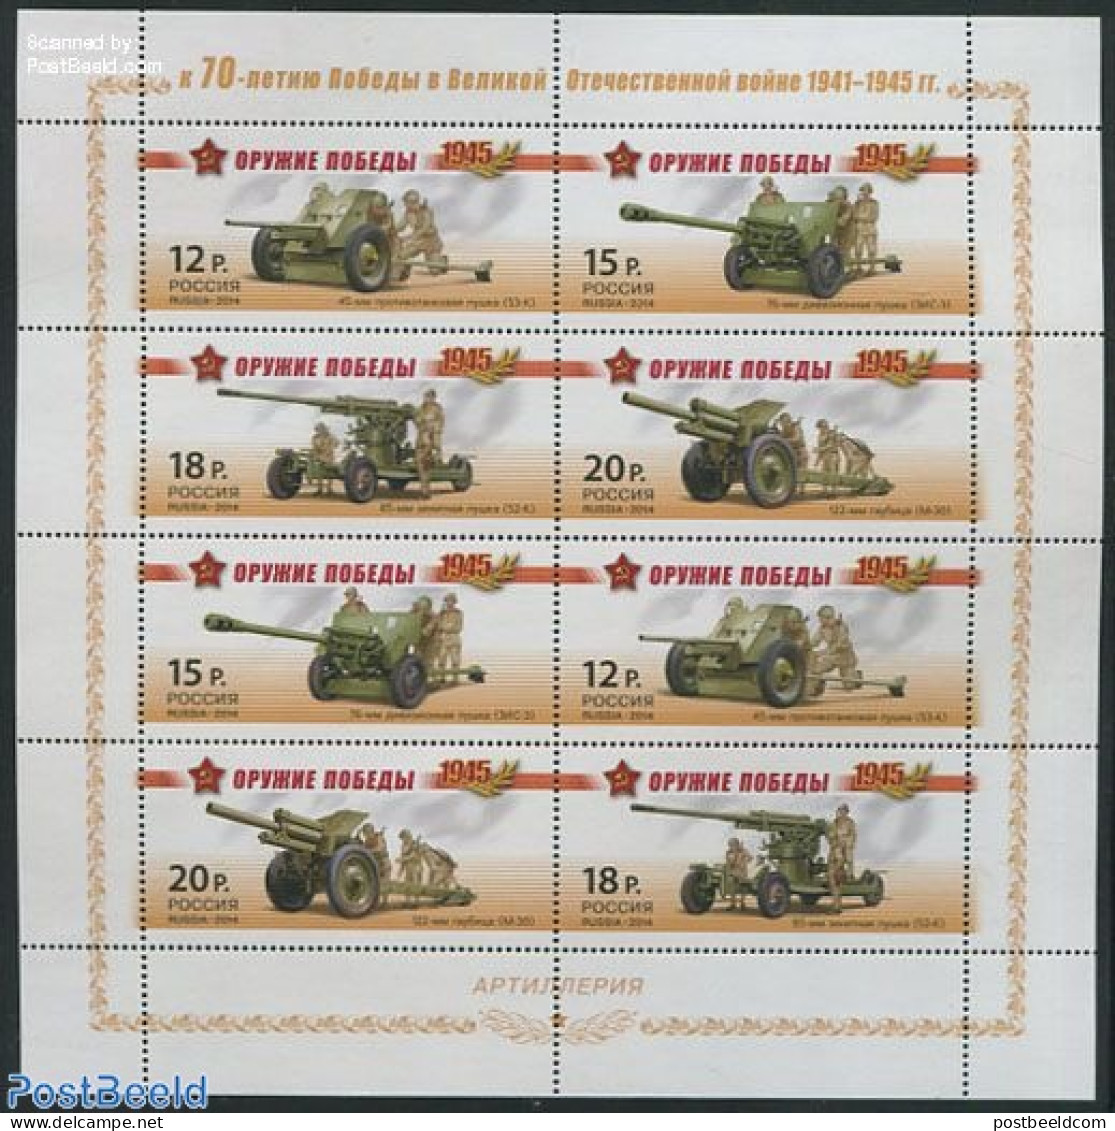 Russia 2014 World War II Weapons, Artillery M/s, Mint NH, History - Various - World War II - Weapons - WW2 (II Guerra Mundial)